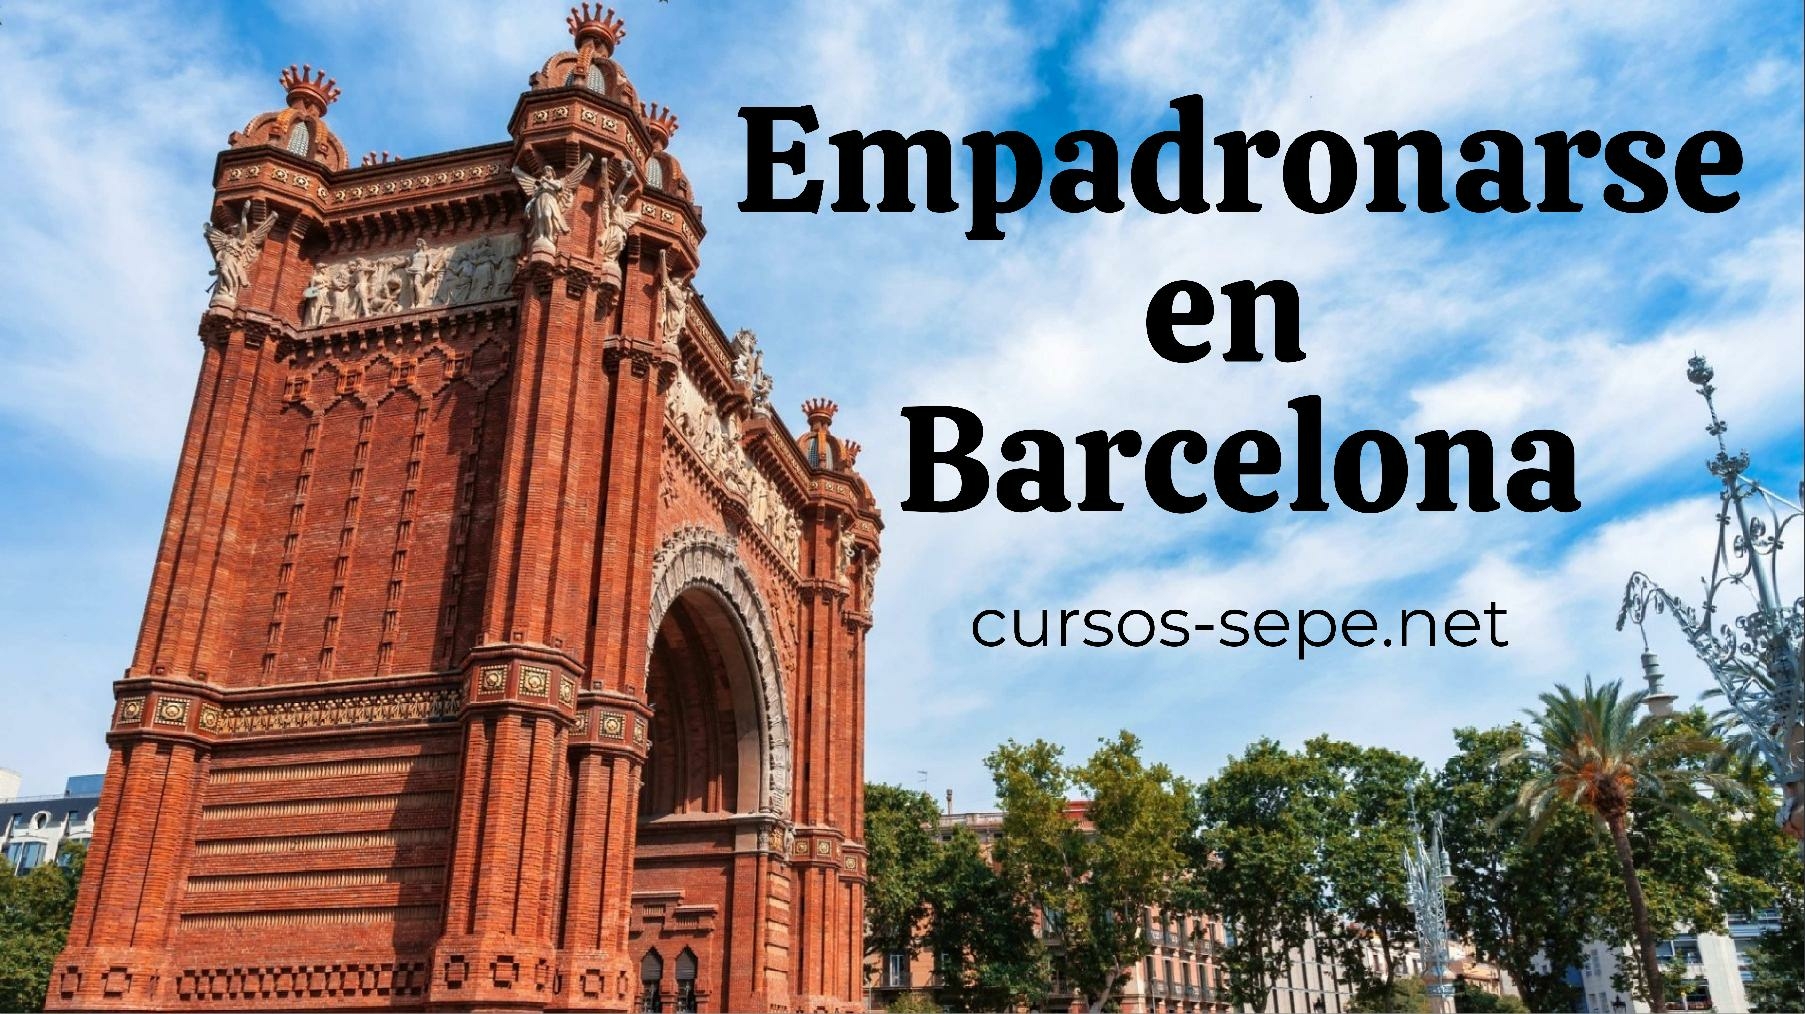 Guía paso a paso para solicitar el empadronamiento en Barcelona de forma fácil y sencilla para todos los ciudadanos que quieran residir en la ciudad.